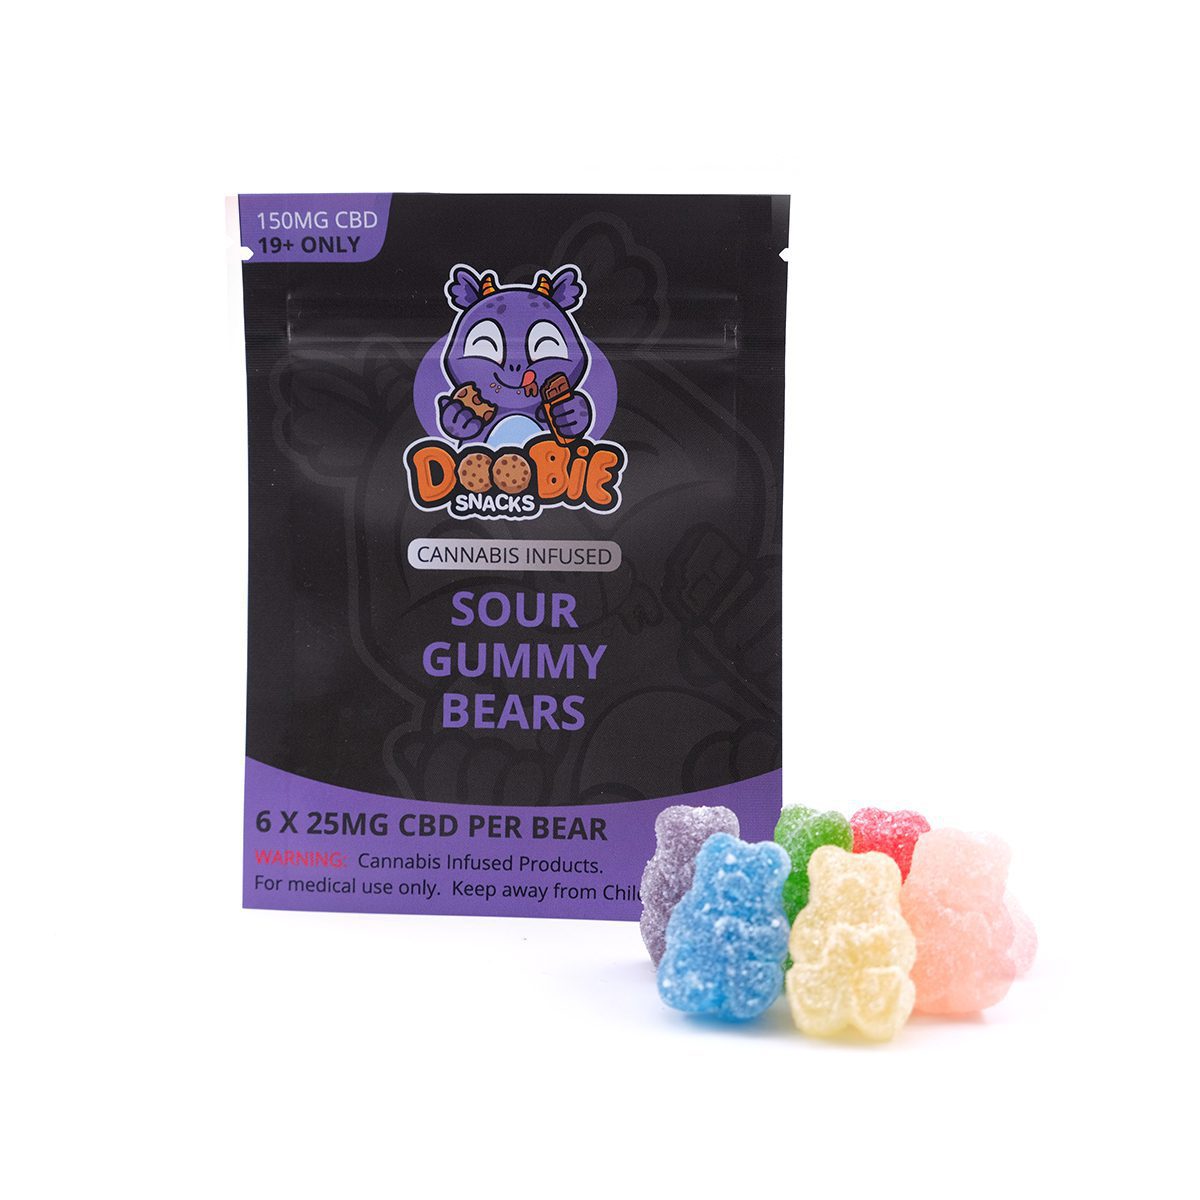 CBD Sour Gummy Bears 150MG CBD By Doobie Snacks